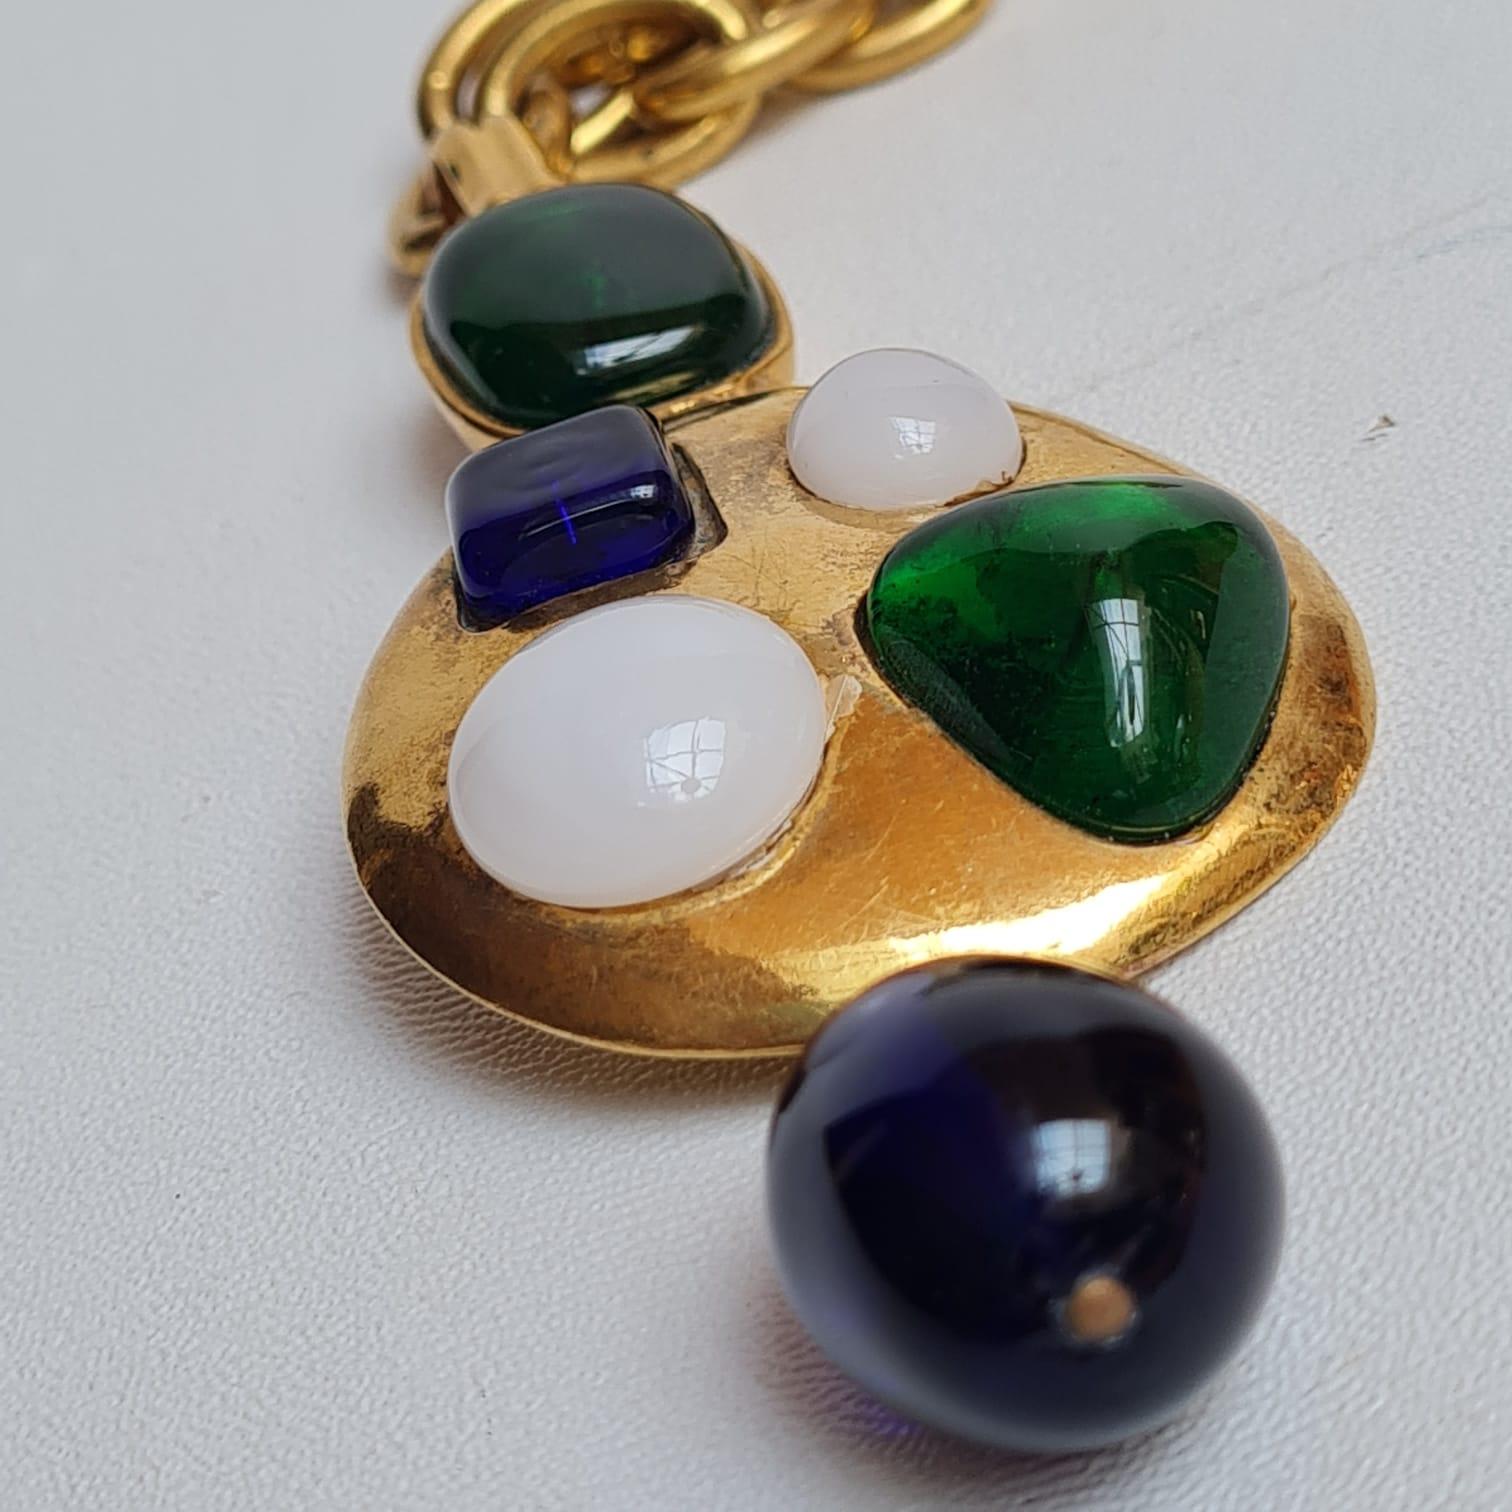 Chanel, rare collier vintage Gripoix byzantin en or avec perles pendantes, 1993 1